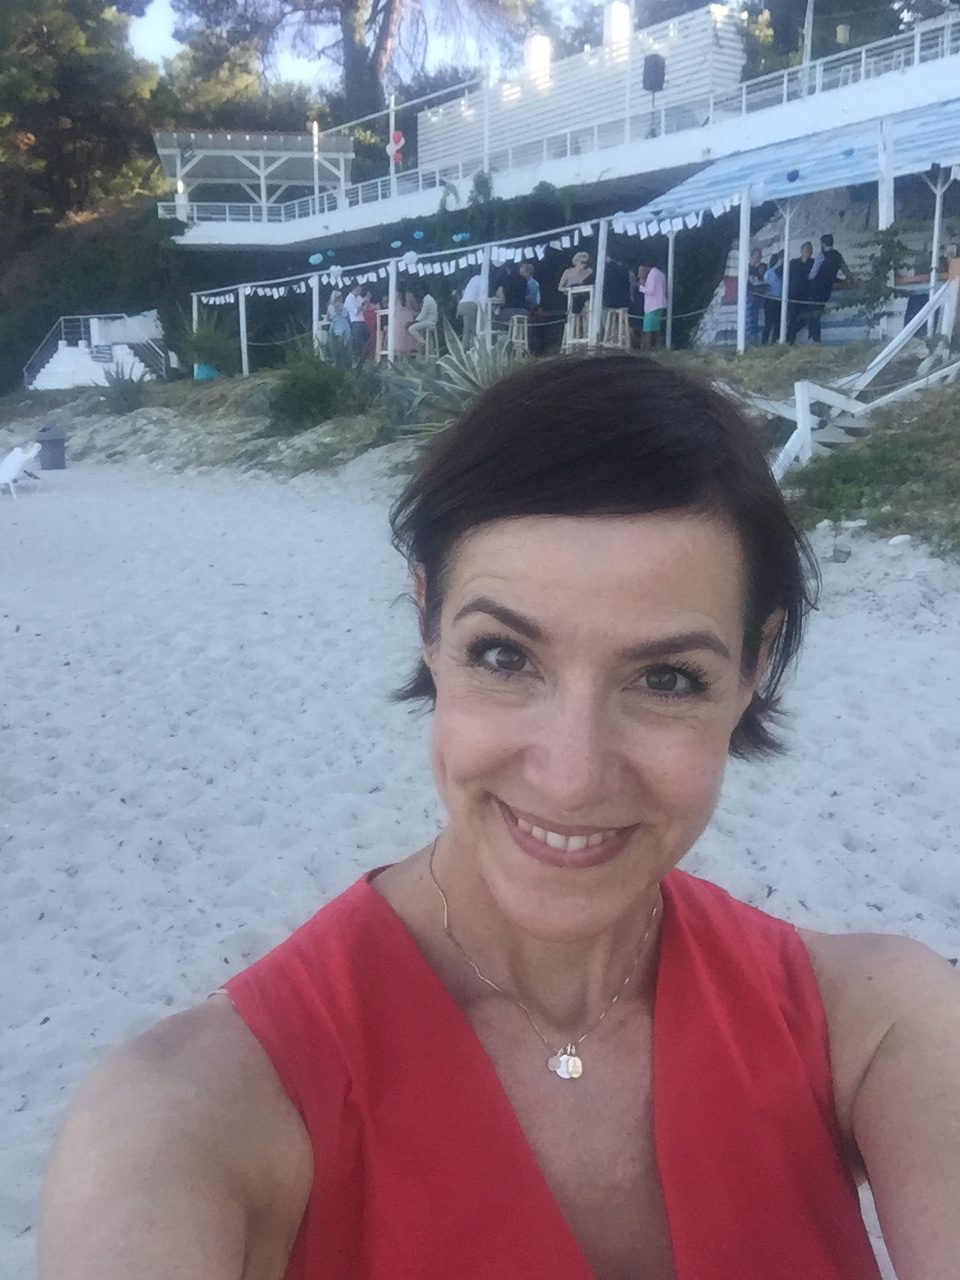 Schminktante Anja Frankenhäuser als Profi Make up Artist wird auch für Hochzeiten und Brautstylings im Ausland gern gebucht - neulich ging es nach griechenland zu einer Strandhochzeit.